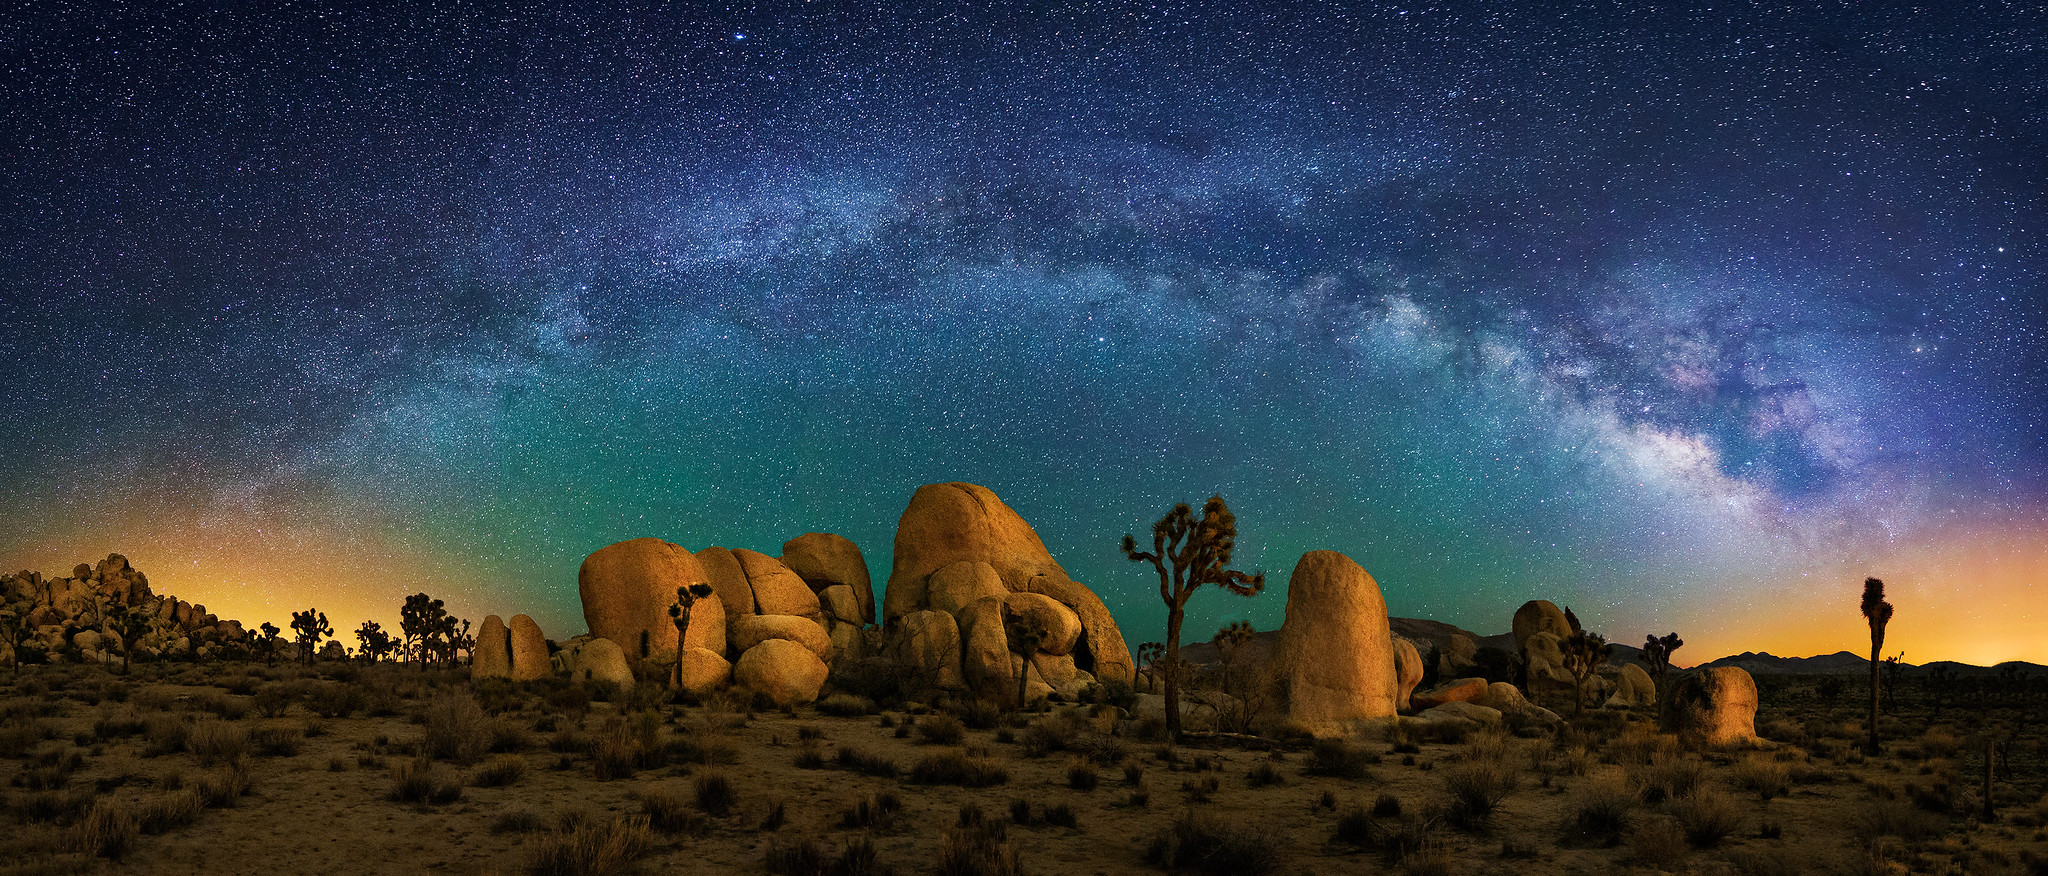 Joshua Tree and Milky Way Panorama